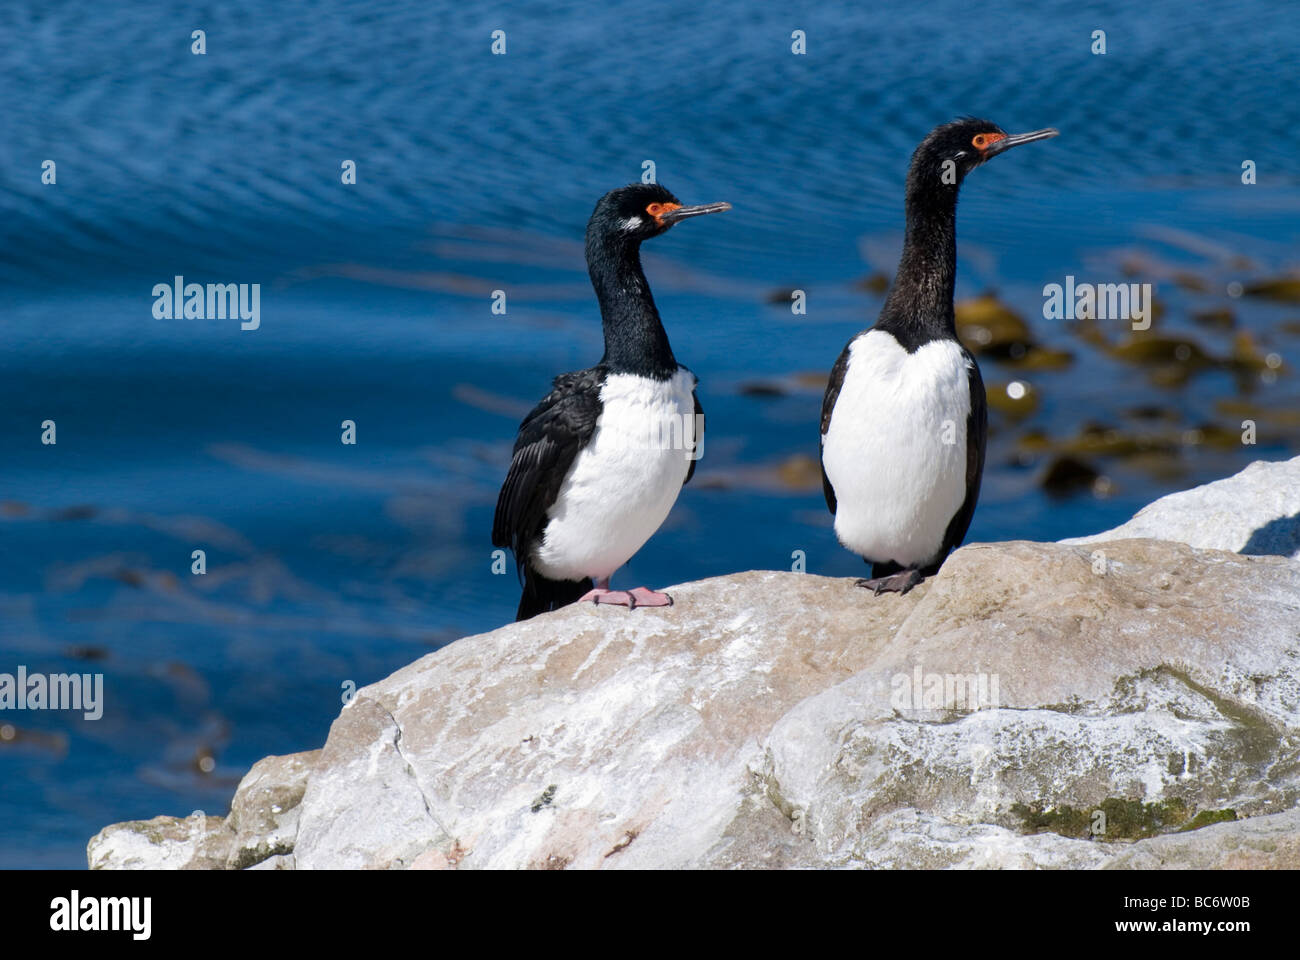 Une paire de cormorans, Phalacrocorax magellanicus Rock, assis sur une falaise. Aussi connu sous le nom de Shag Rock ou Cormoran de Magellan. Banque D'Images